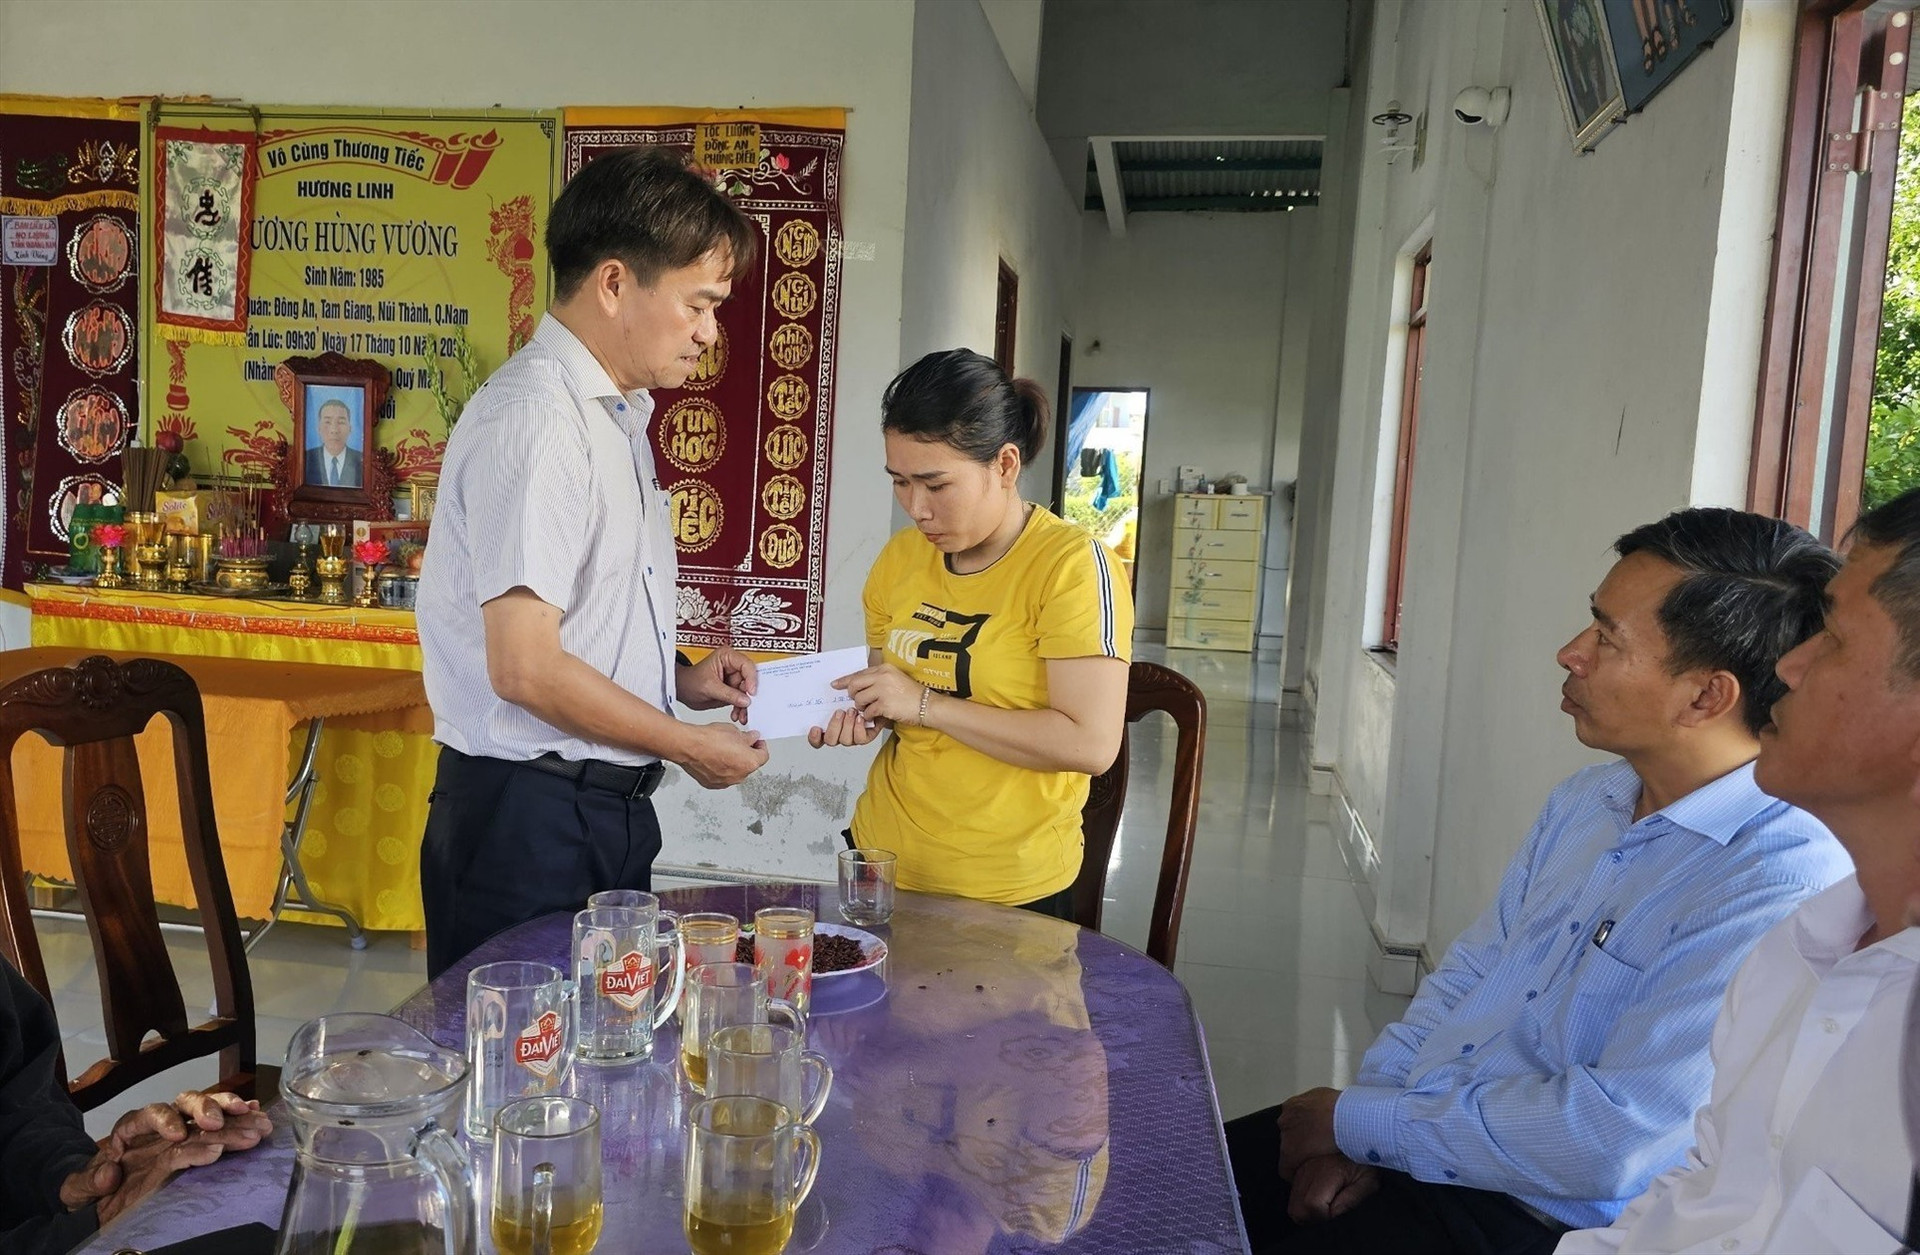 Ông Nguyễn Duy Ân - Phó Bí thư Thường trực Thành ủy Tam Kỳ thăm hỏi, hỗ trợ gia đình nạn nhân Lương Hùng Vương (thôn Đông An, xã Tam Giang), là một trong 2 người bị tử vong trong vụ chìm tàu câu mực. Ảnh: CTV